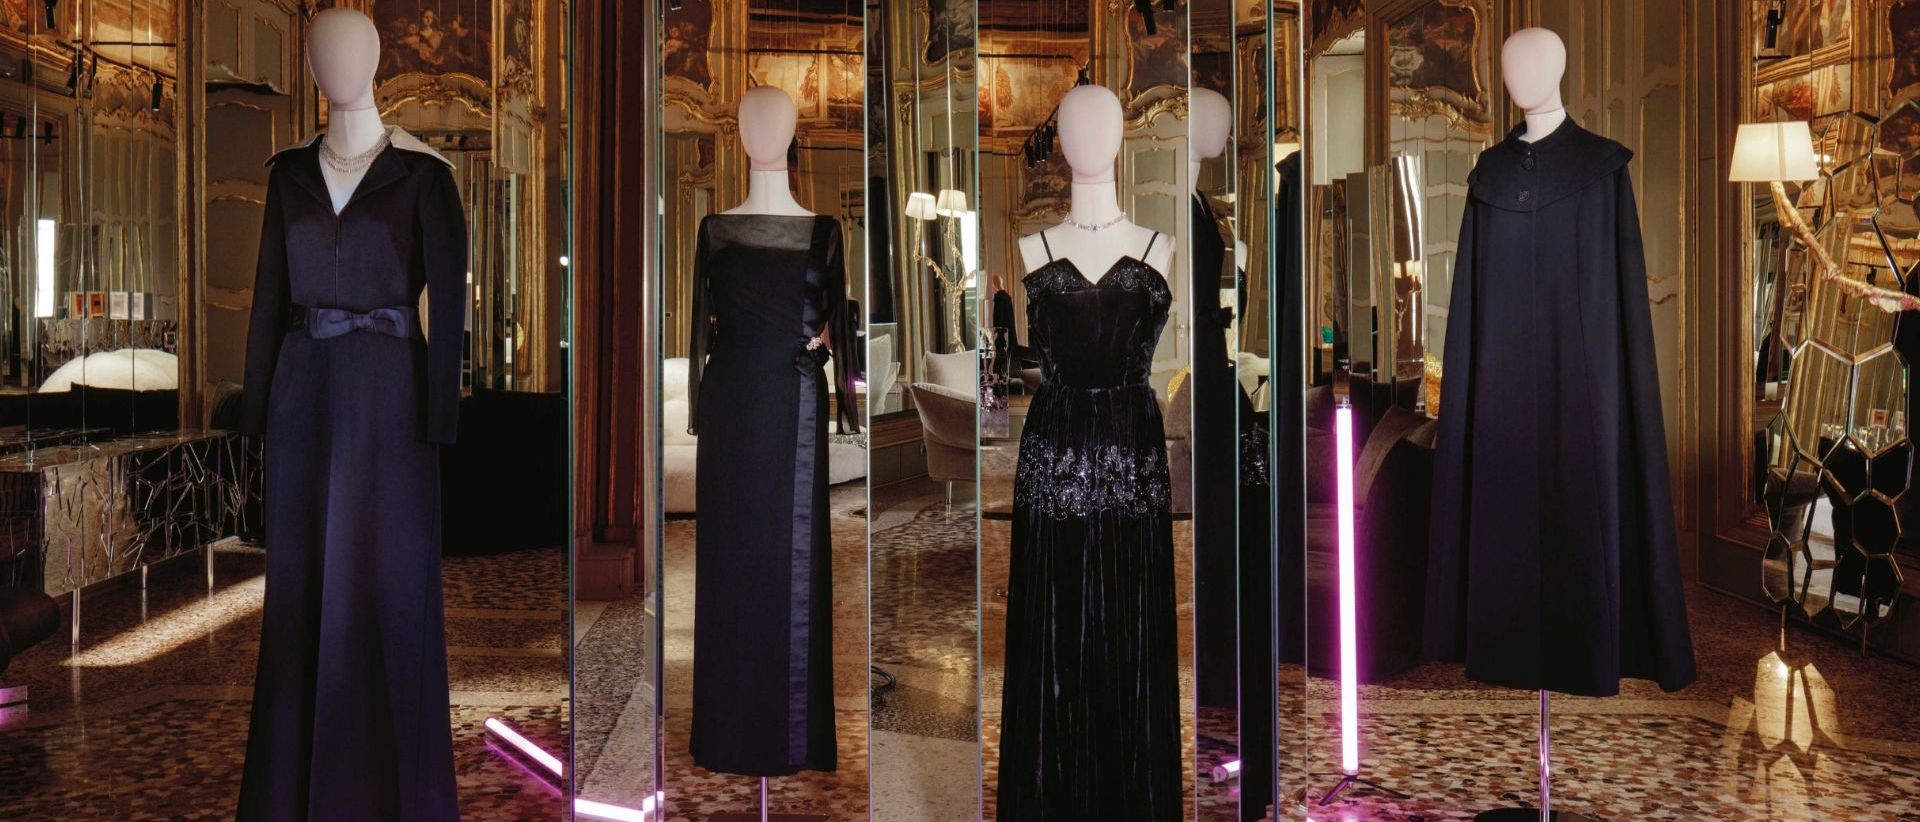  Schwarze Kleidung. Eine Auswahl an Kleidungsstücken, die von der Diva getragen wurden und vom Biki Mailand signiert wurden. 